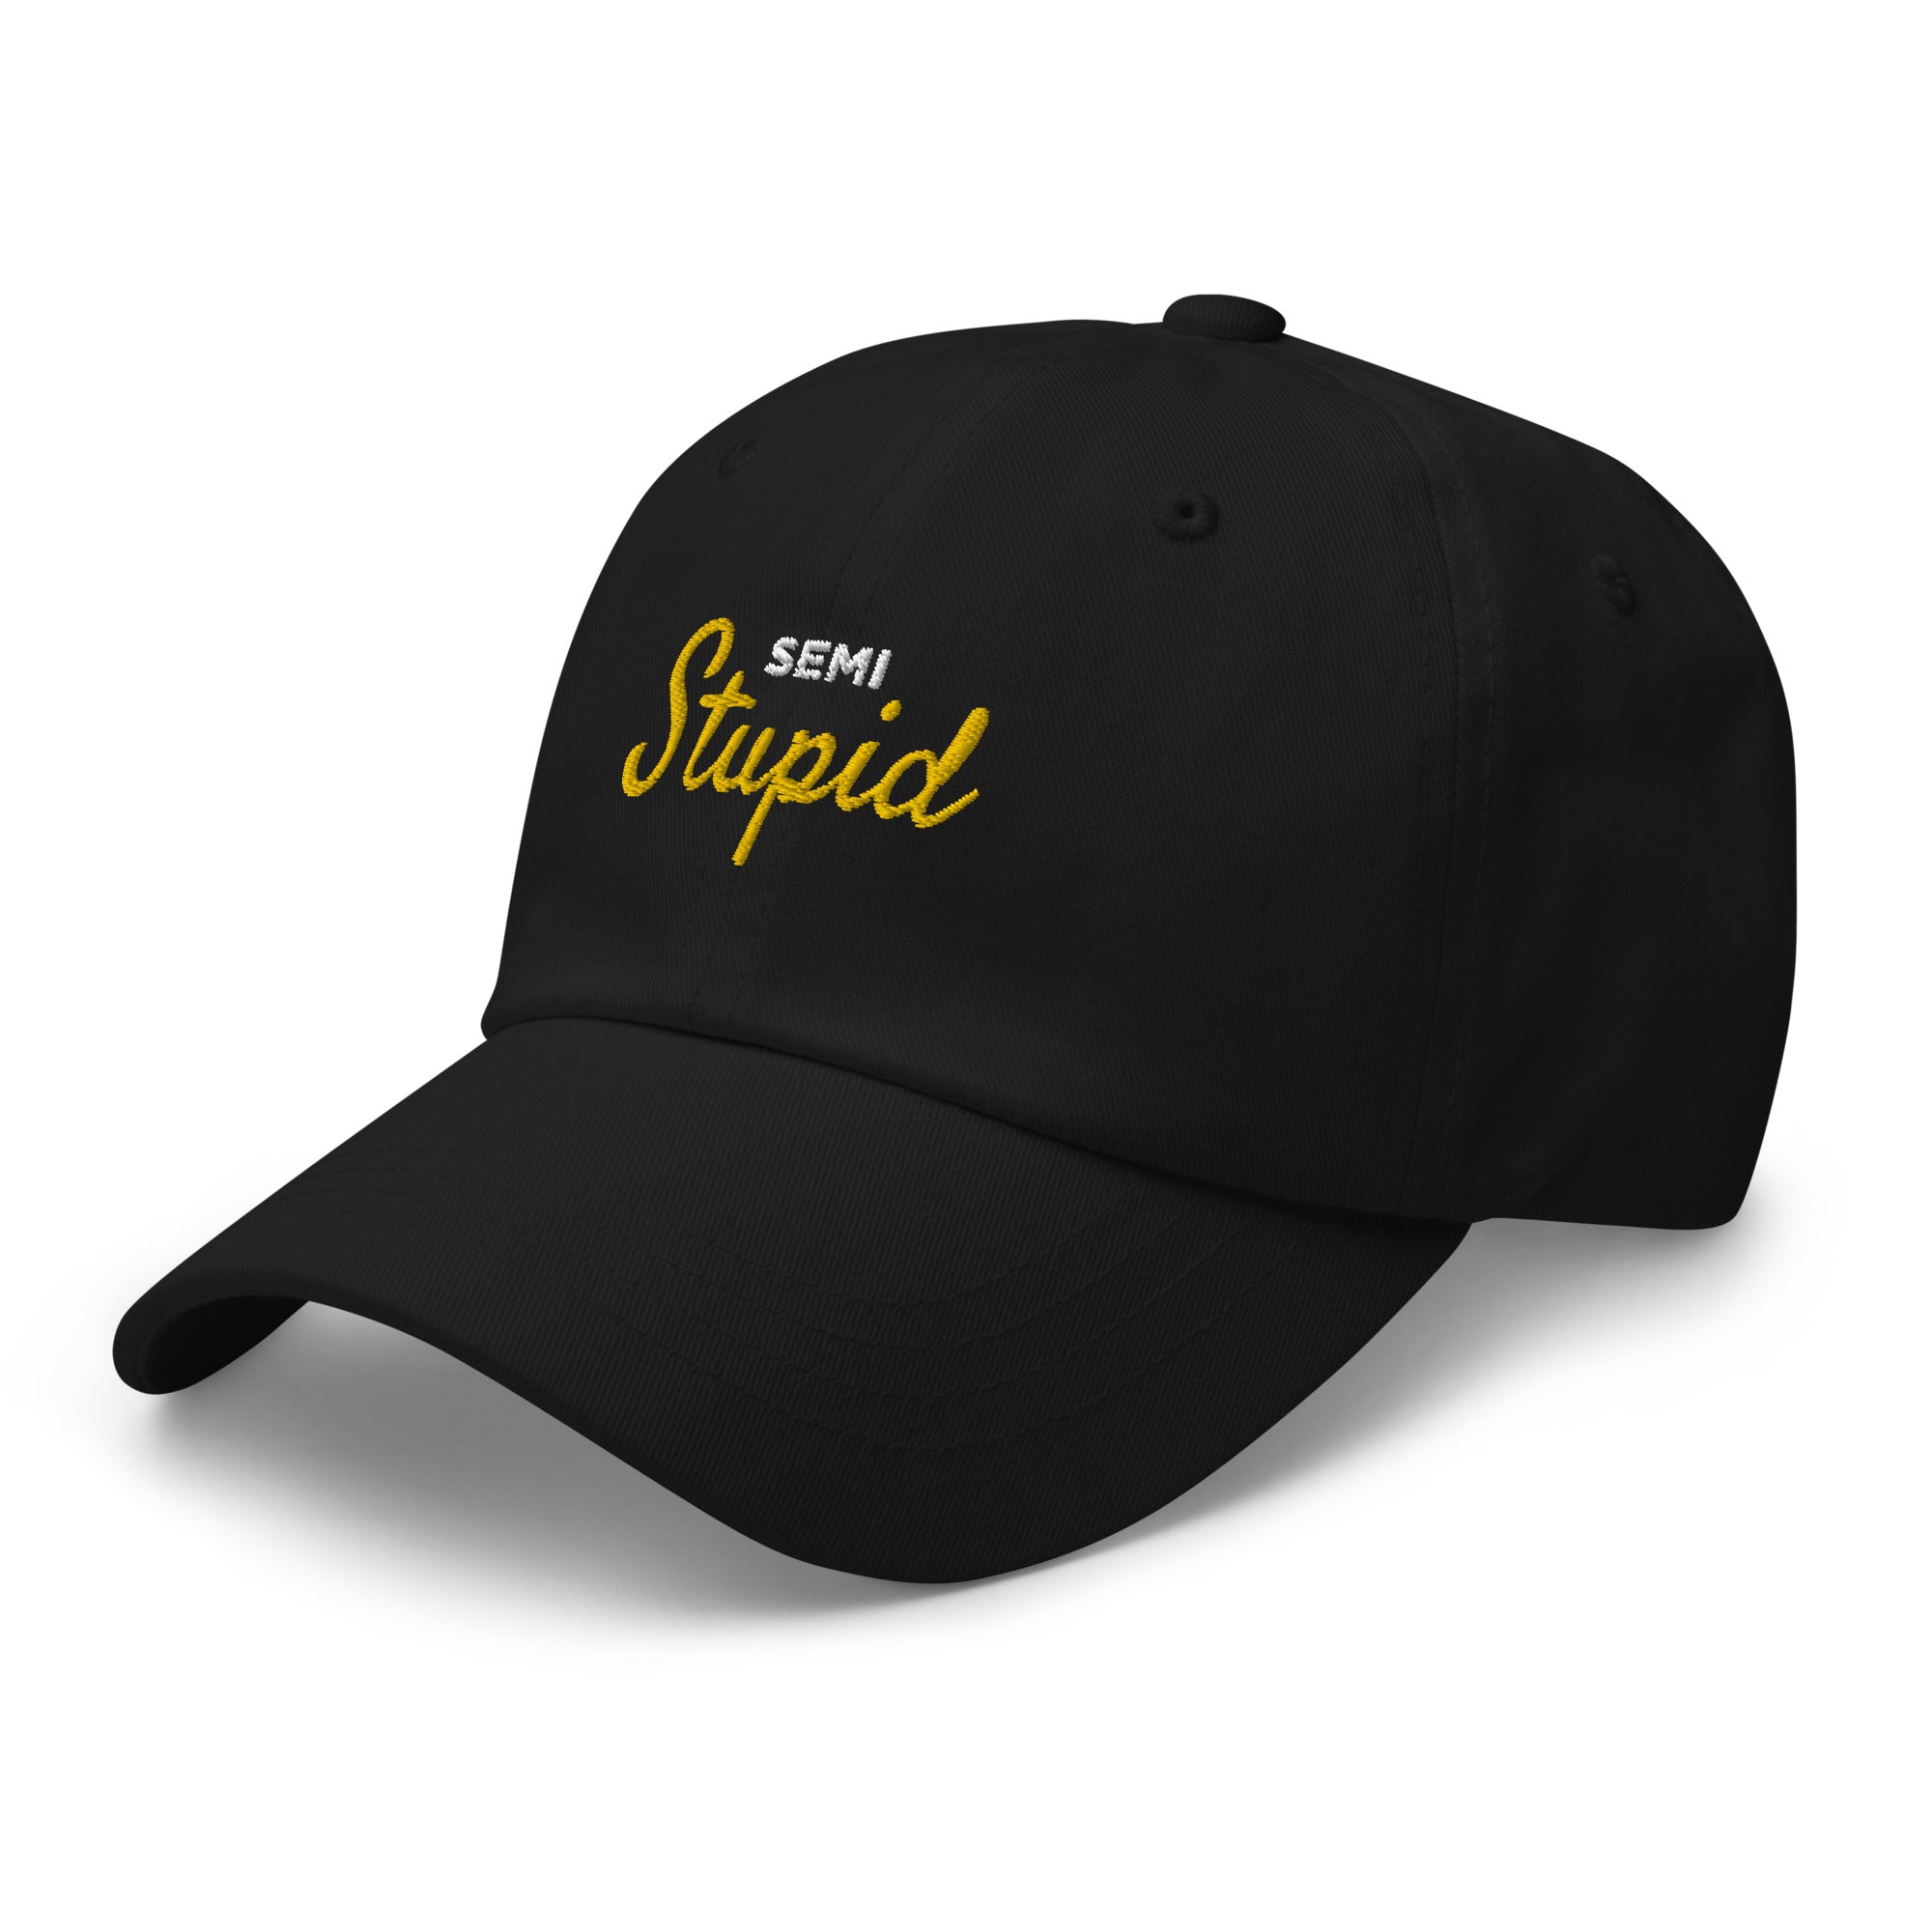 Semistupid Dad hat | Black